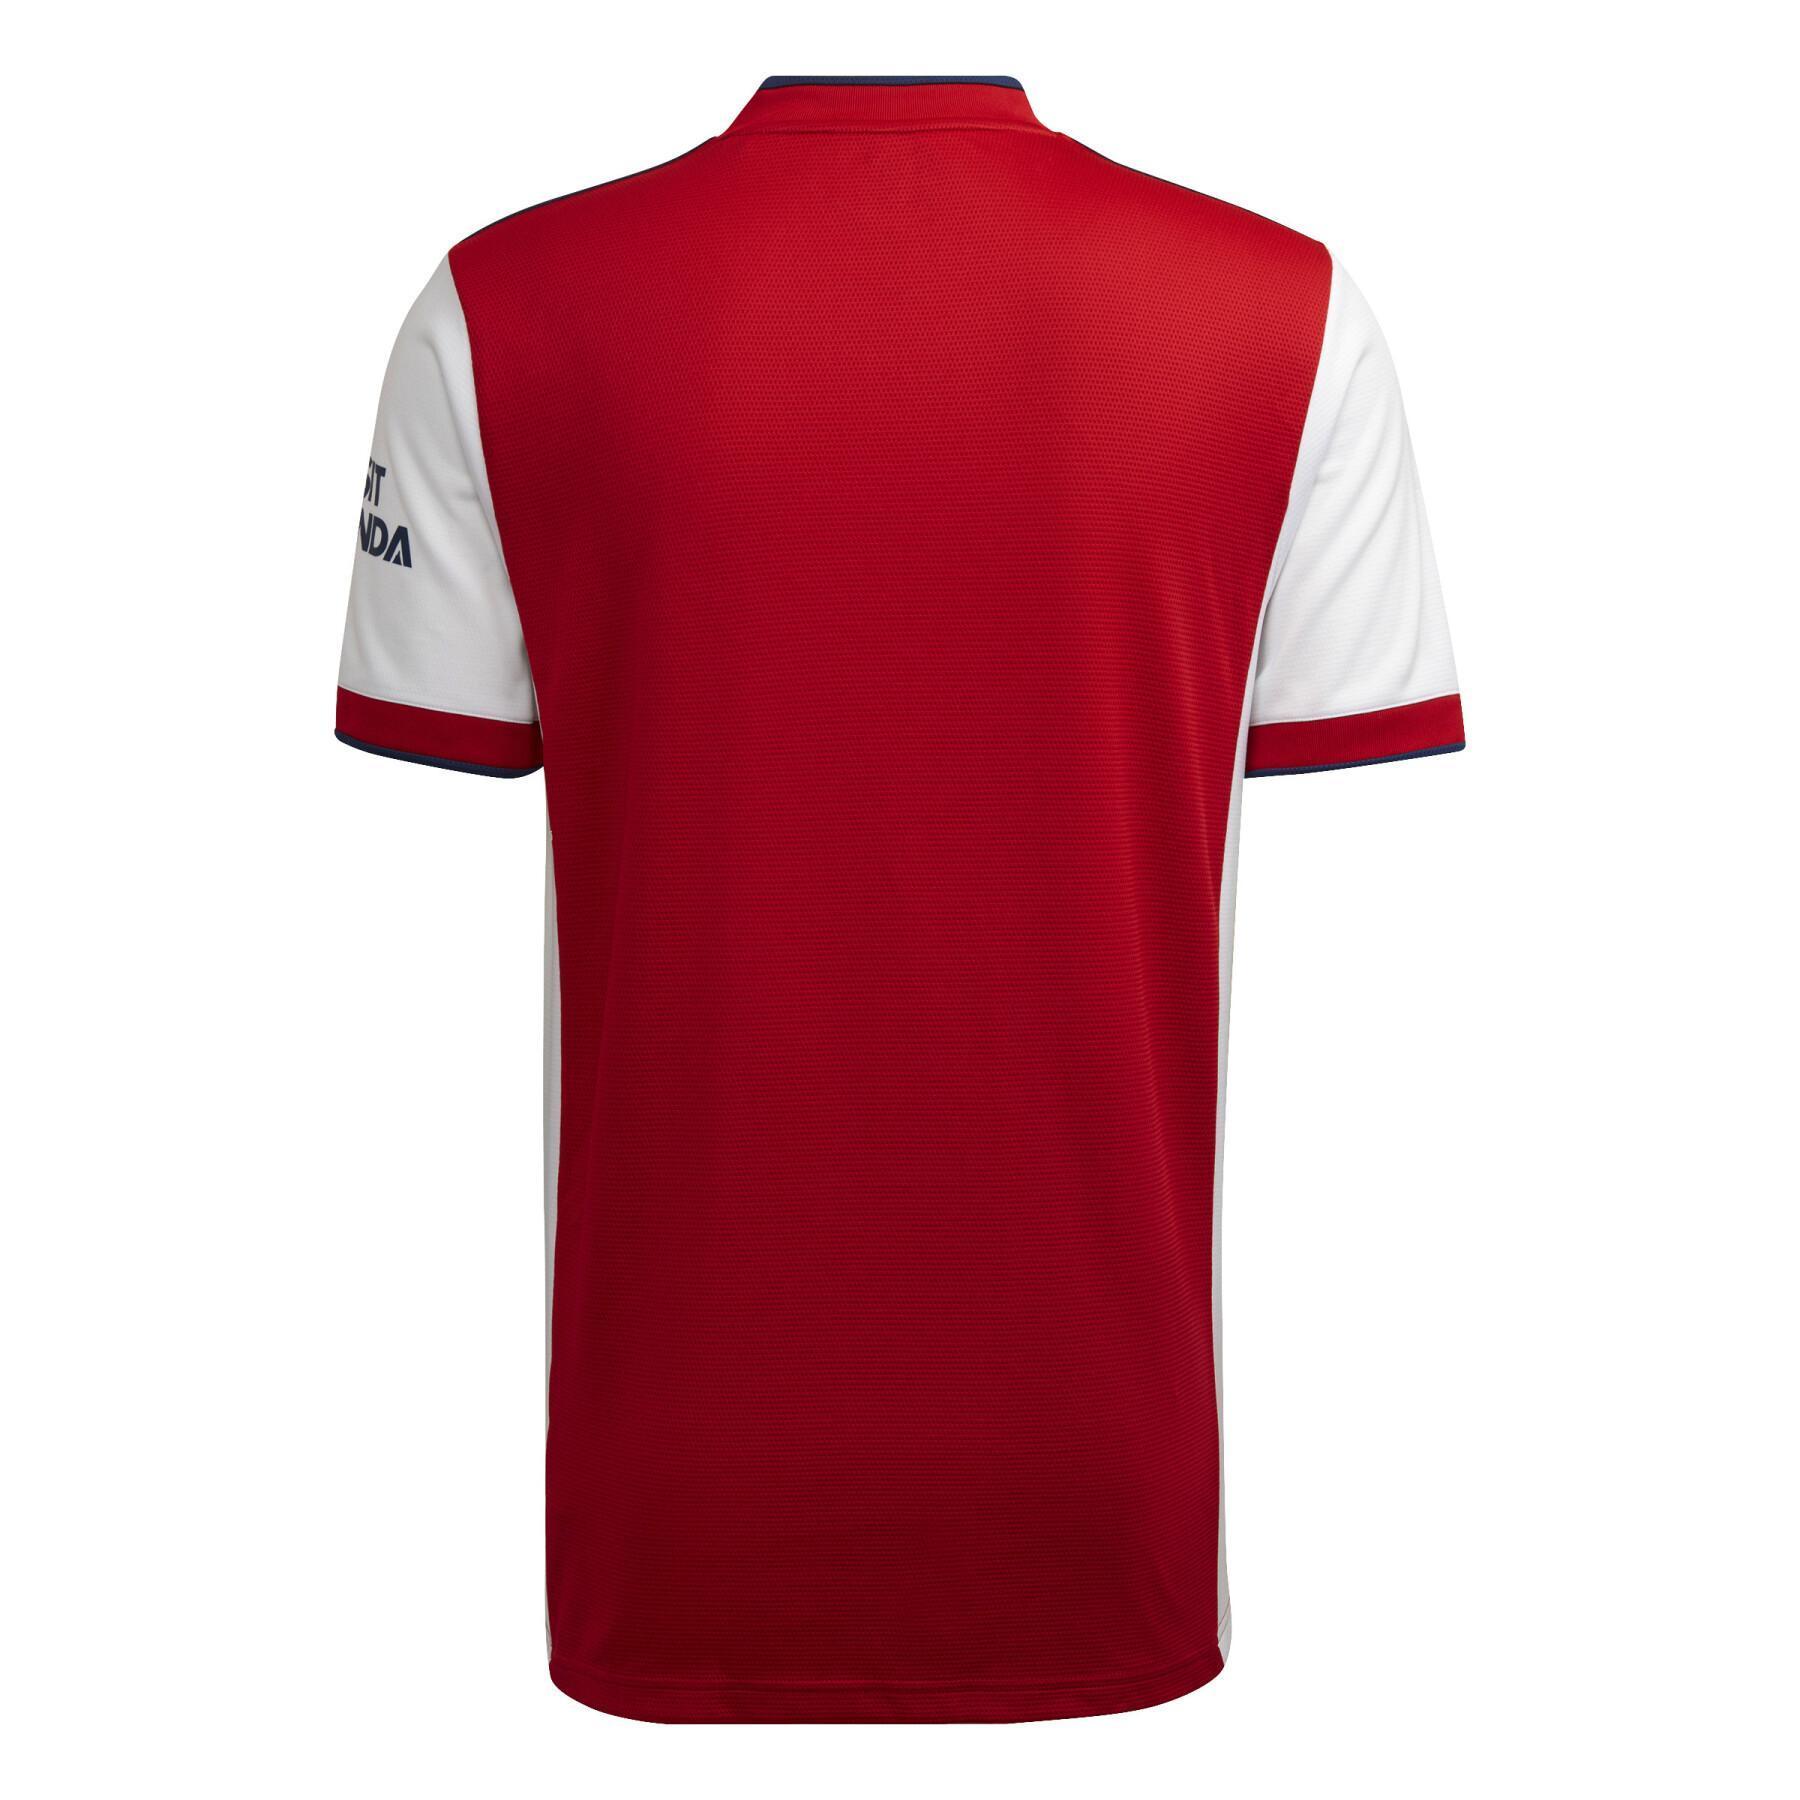 Camiseta primera equipación Arsenal 2021/22